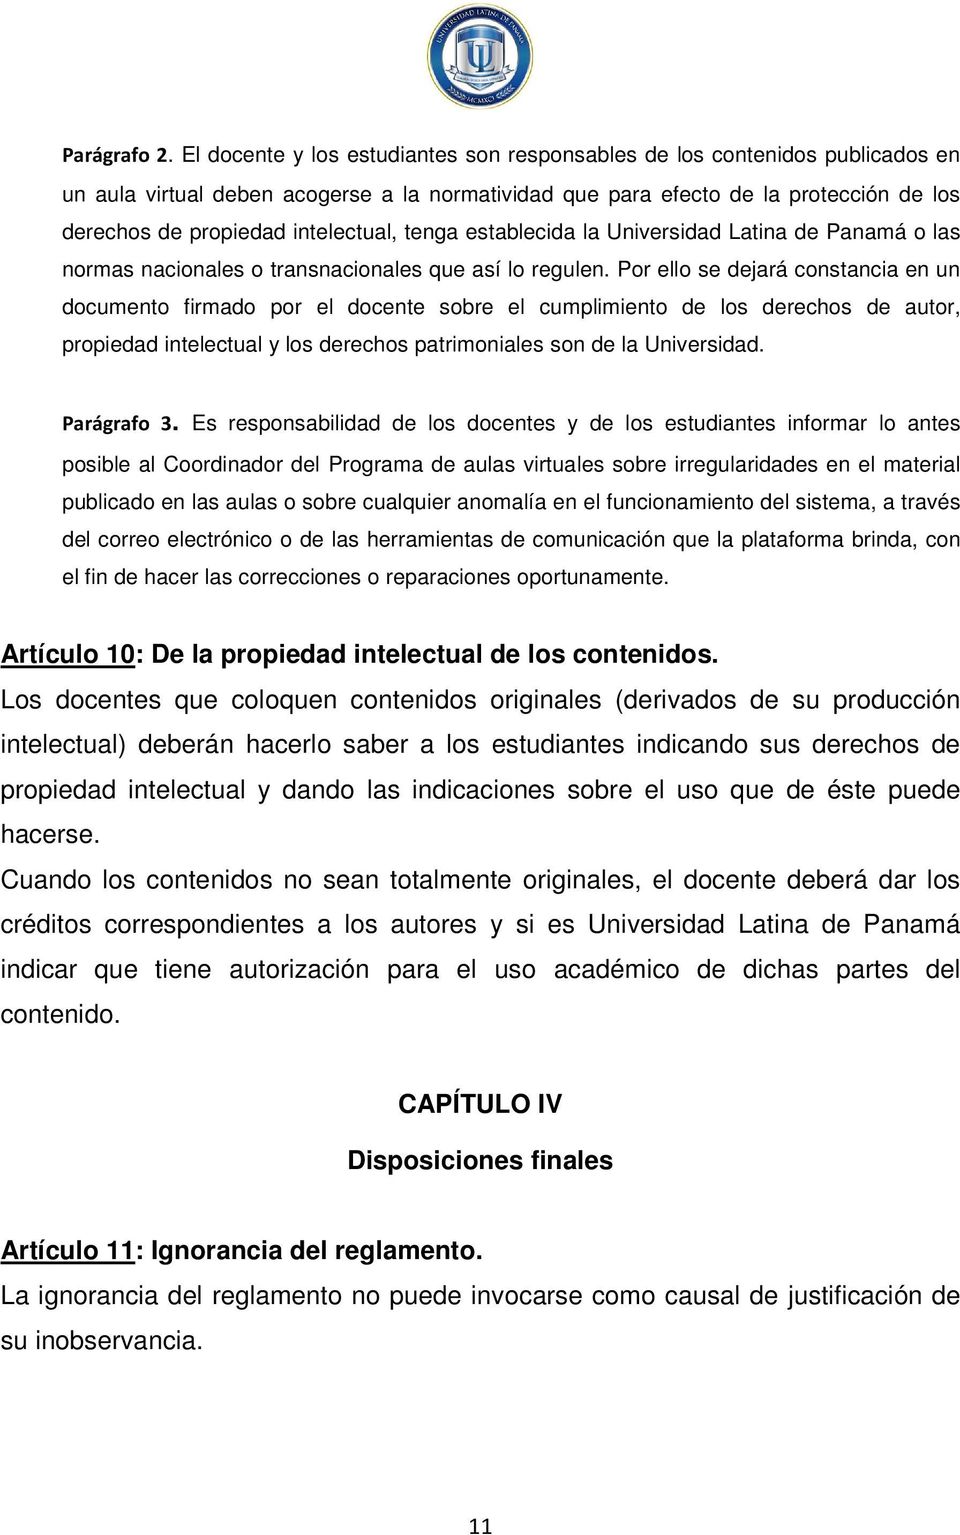 intelectual, tenga establecida la Universidad Latina de Panamá o las normas nacionales o transnacionales que así lo regulen.